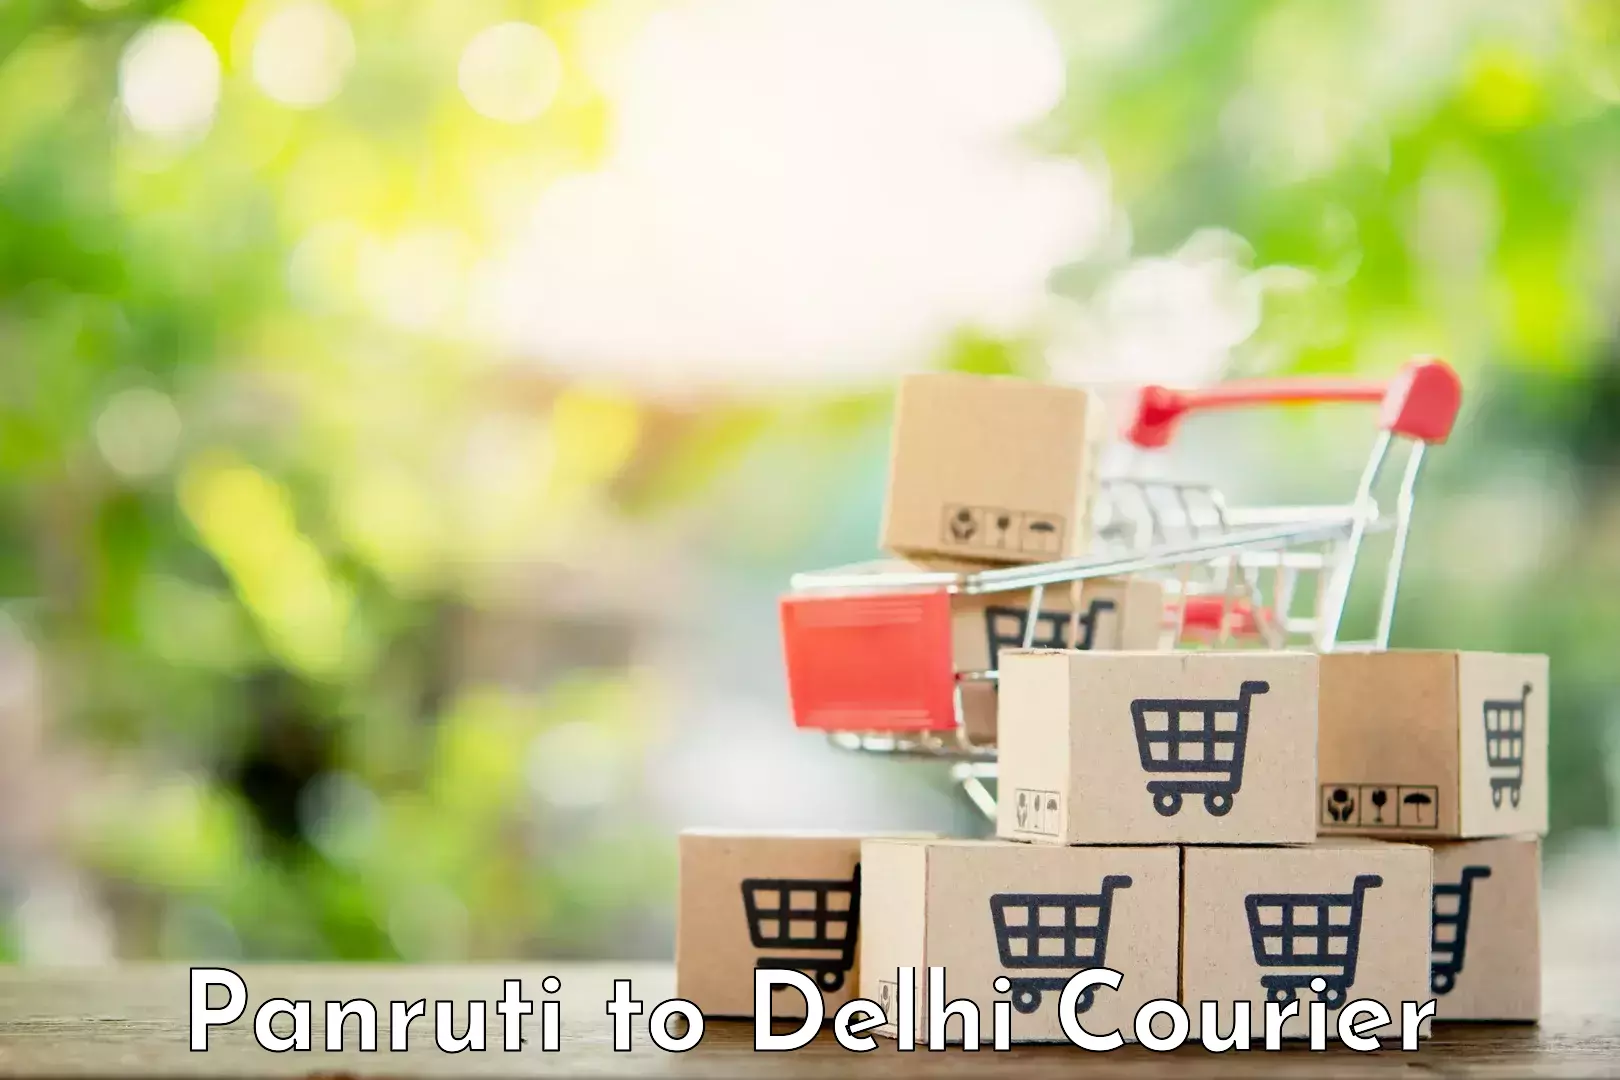 Bulk courier orders Panruti to Jamia Millia Islamia New Delhi